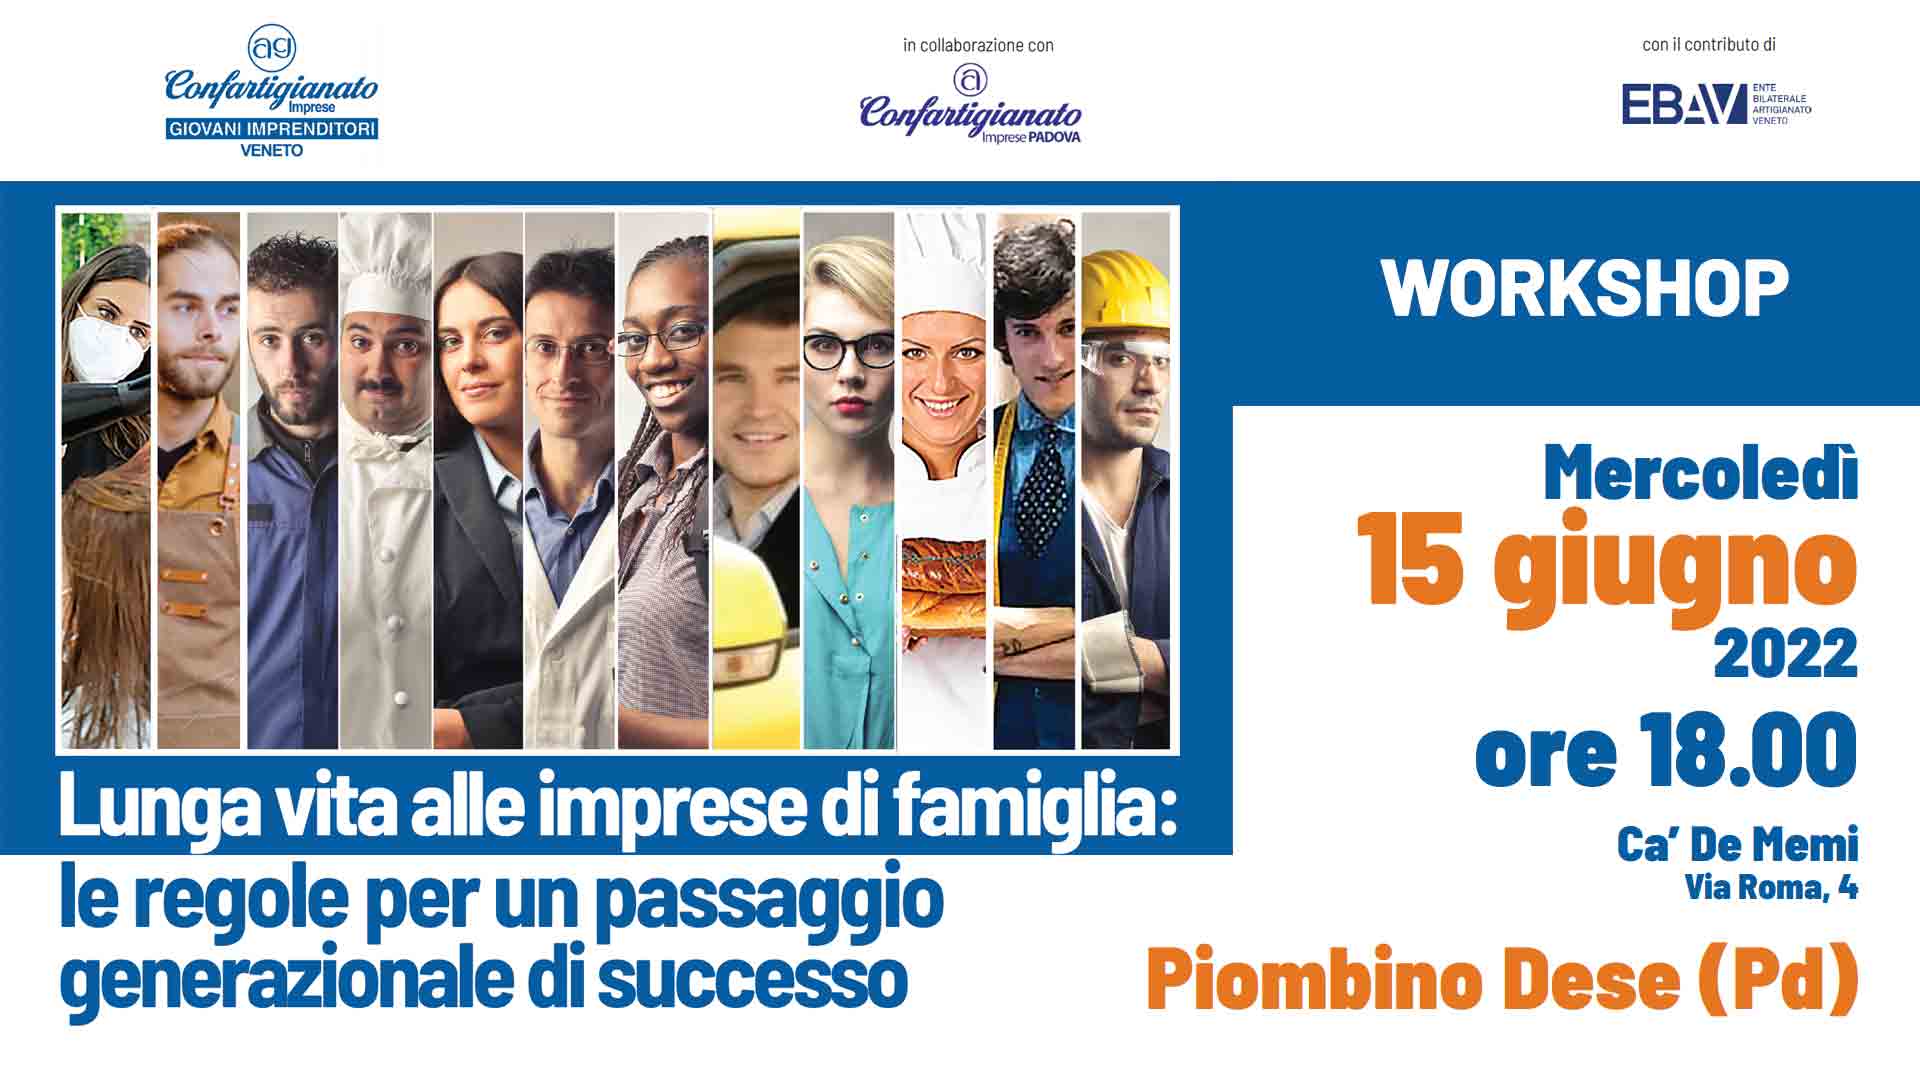 GIOVANI – Lunga vita alle imprese di famiglia: le regole per un passaggio generazionale di successo. Il 15 giugno, workshop a Padova. Iscriviti per partecipare